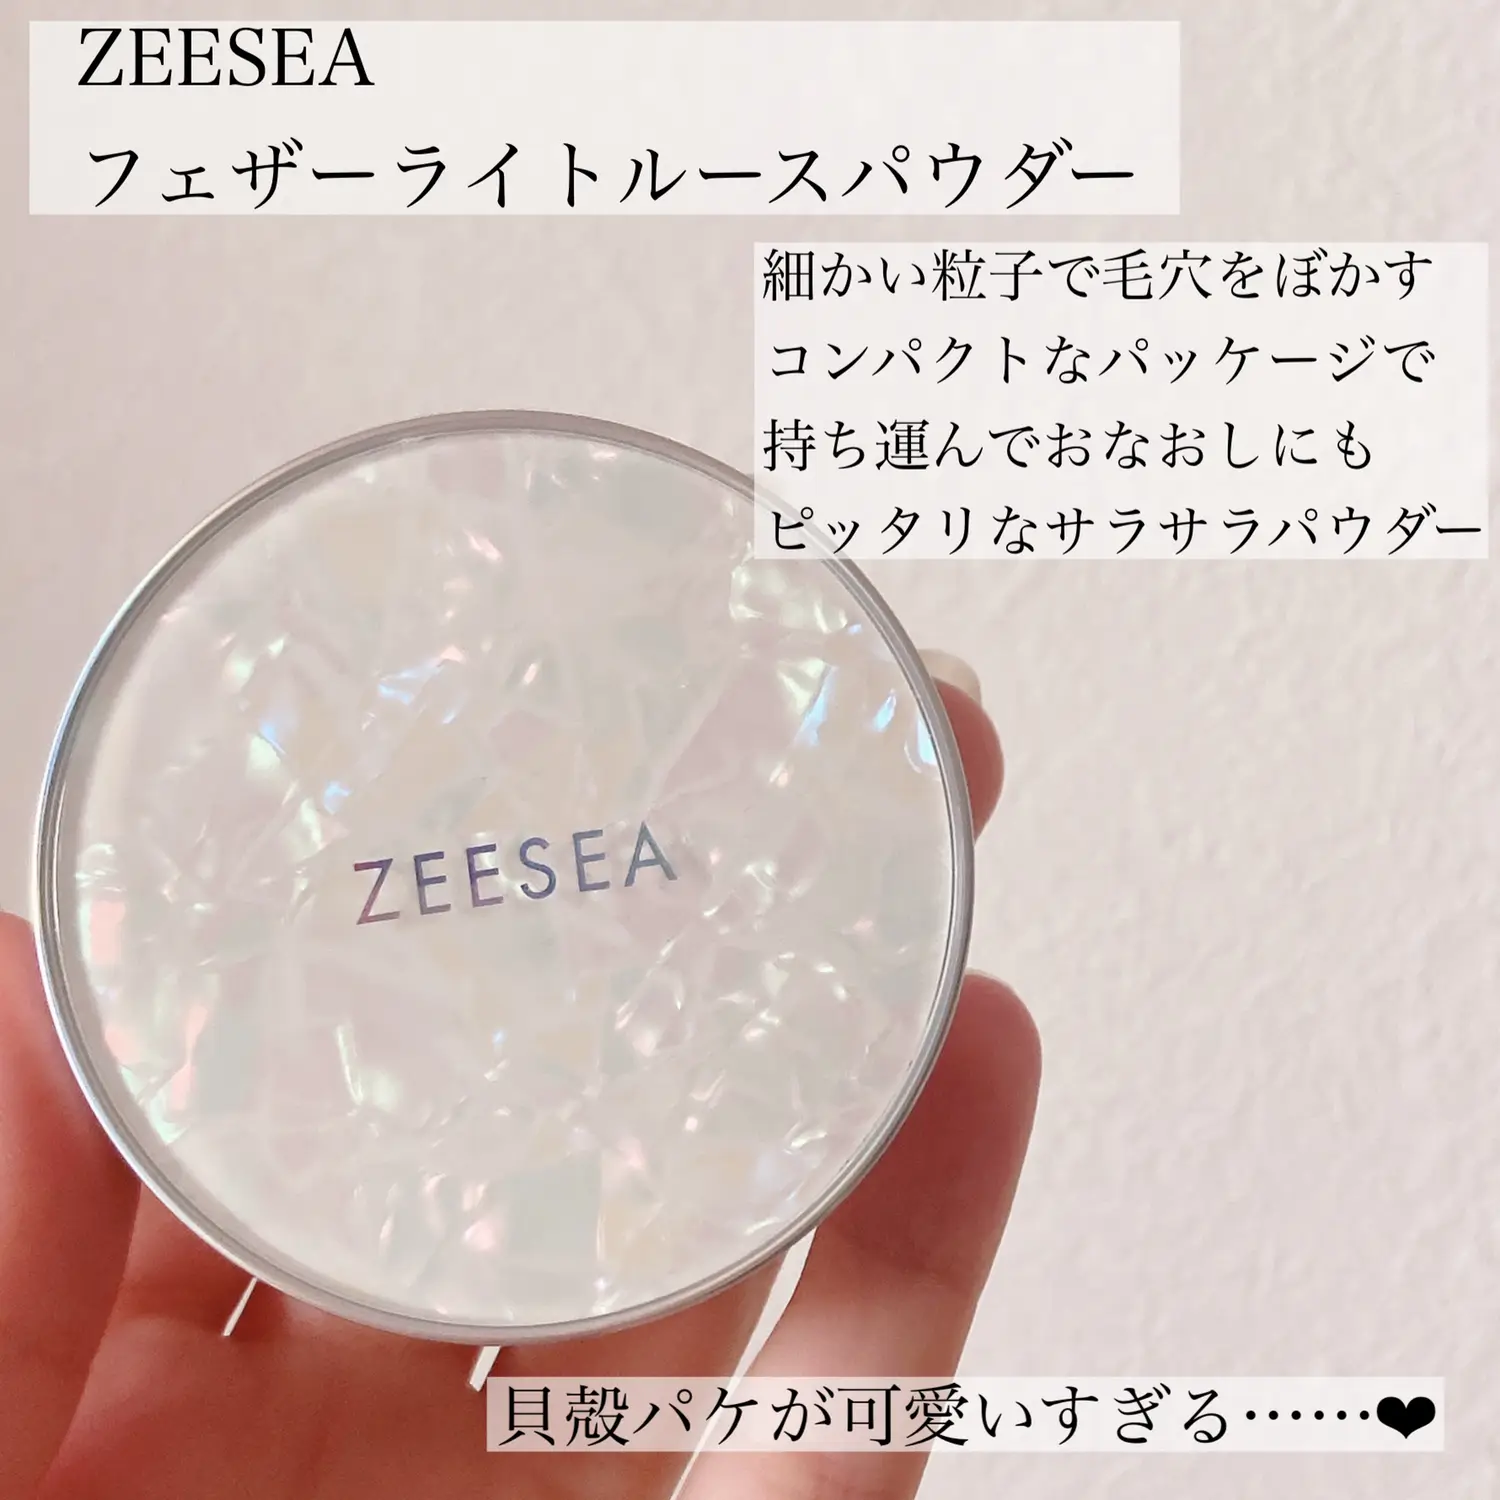 初回限定】 ZEESEA フェザーライトルースパウダー 01 ゼロ粉感ルースパウダー 3g